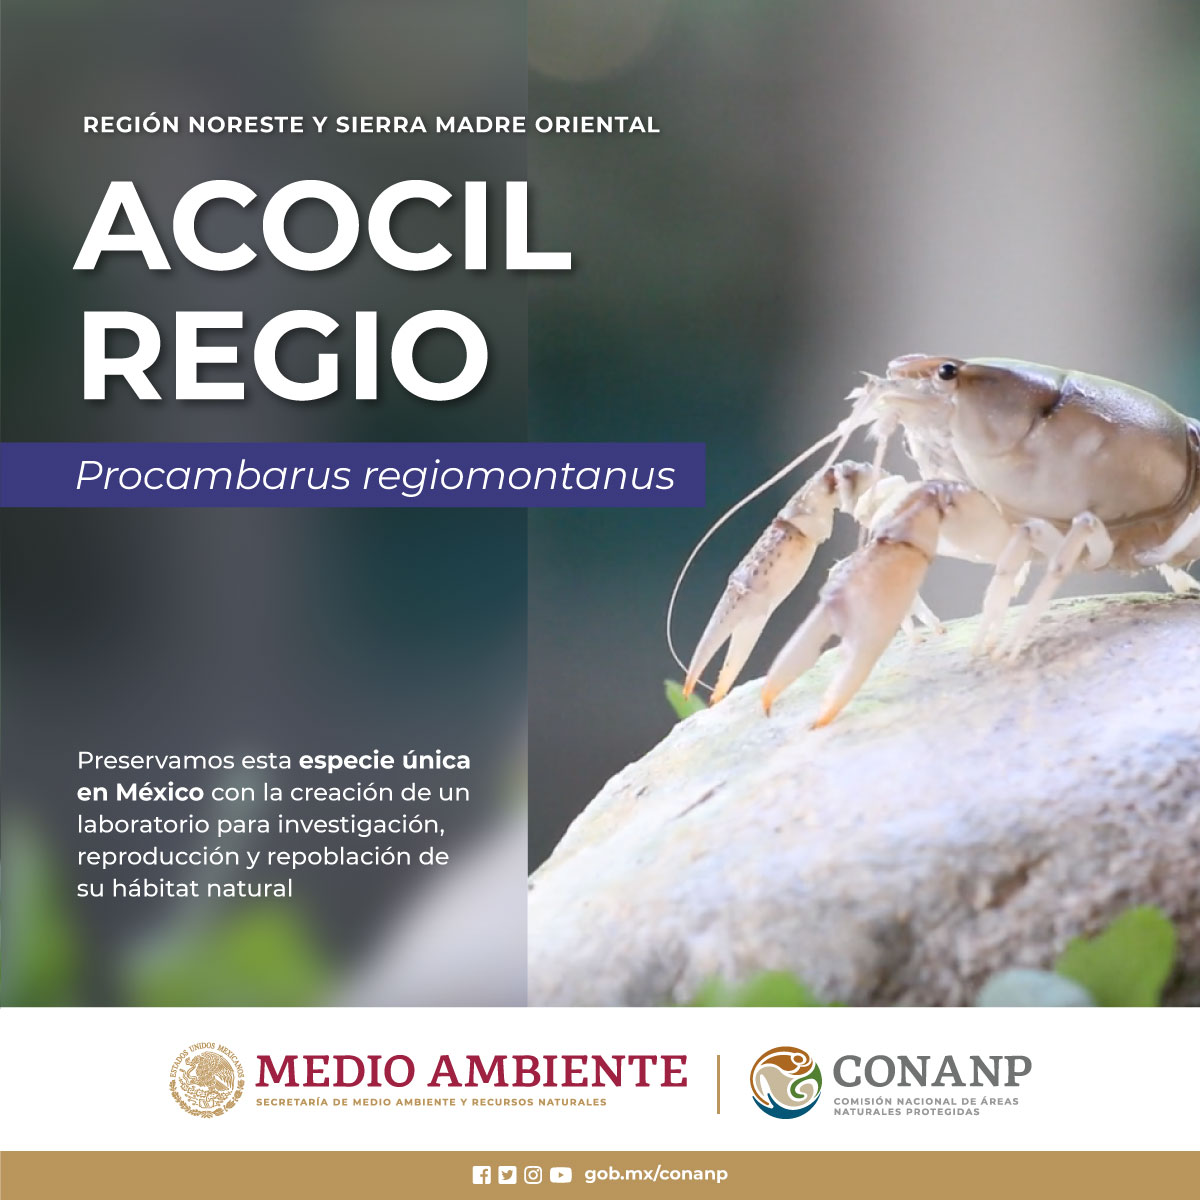 En el Parque Nacional #ElSabinal, Nuevo León, es el último refugio del acocil regiomontano (Procambarus regiomontanus), una especie endémica de cangrejo de río. 🦐

¿Lo conocías? #ConservarParaVivir 🦐🌿🌊🌳🇲🇽